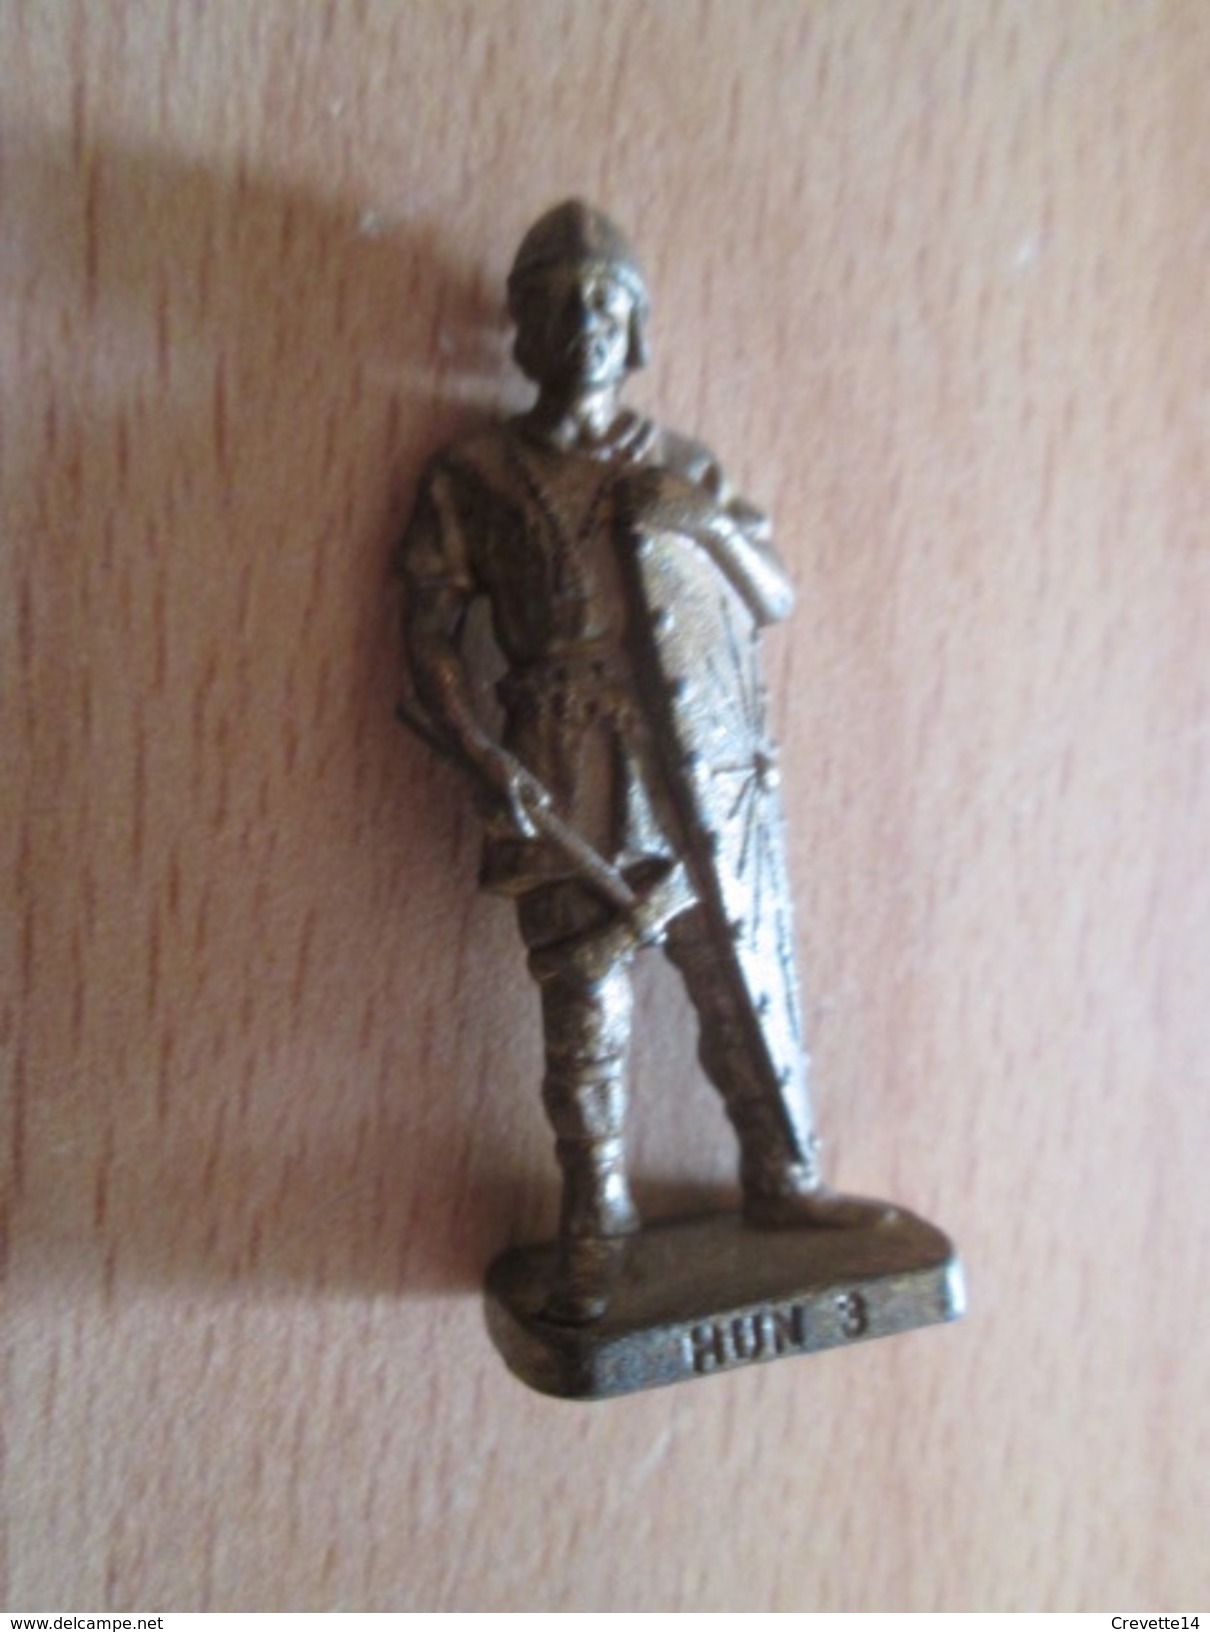 Figurine KINDER MONOBLOC METAL /  GUERRIER HUN 3 K95 N 109 - Metal Figurines